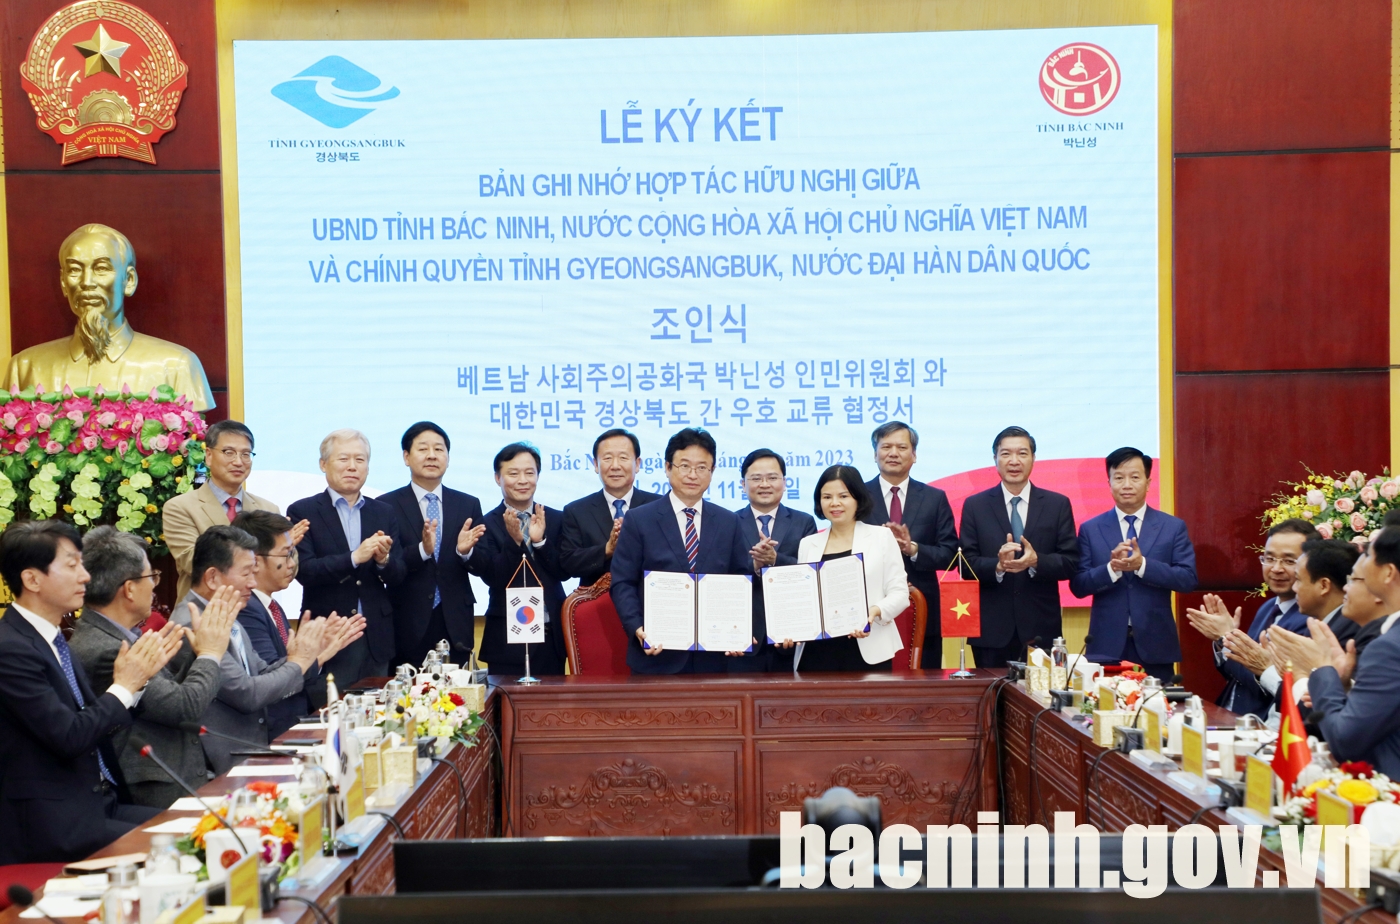 Lễ ký kết Bản ghi nhớ hợp tác giữa UBND tỉnh và chính quyền tỉnh Gyeongsangbuk